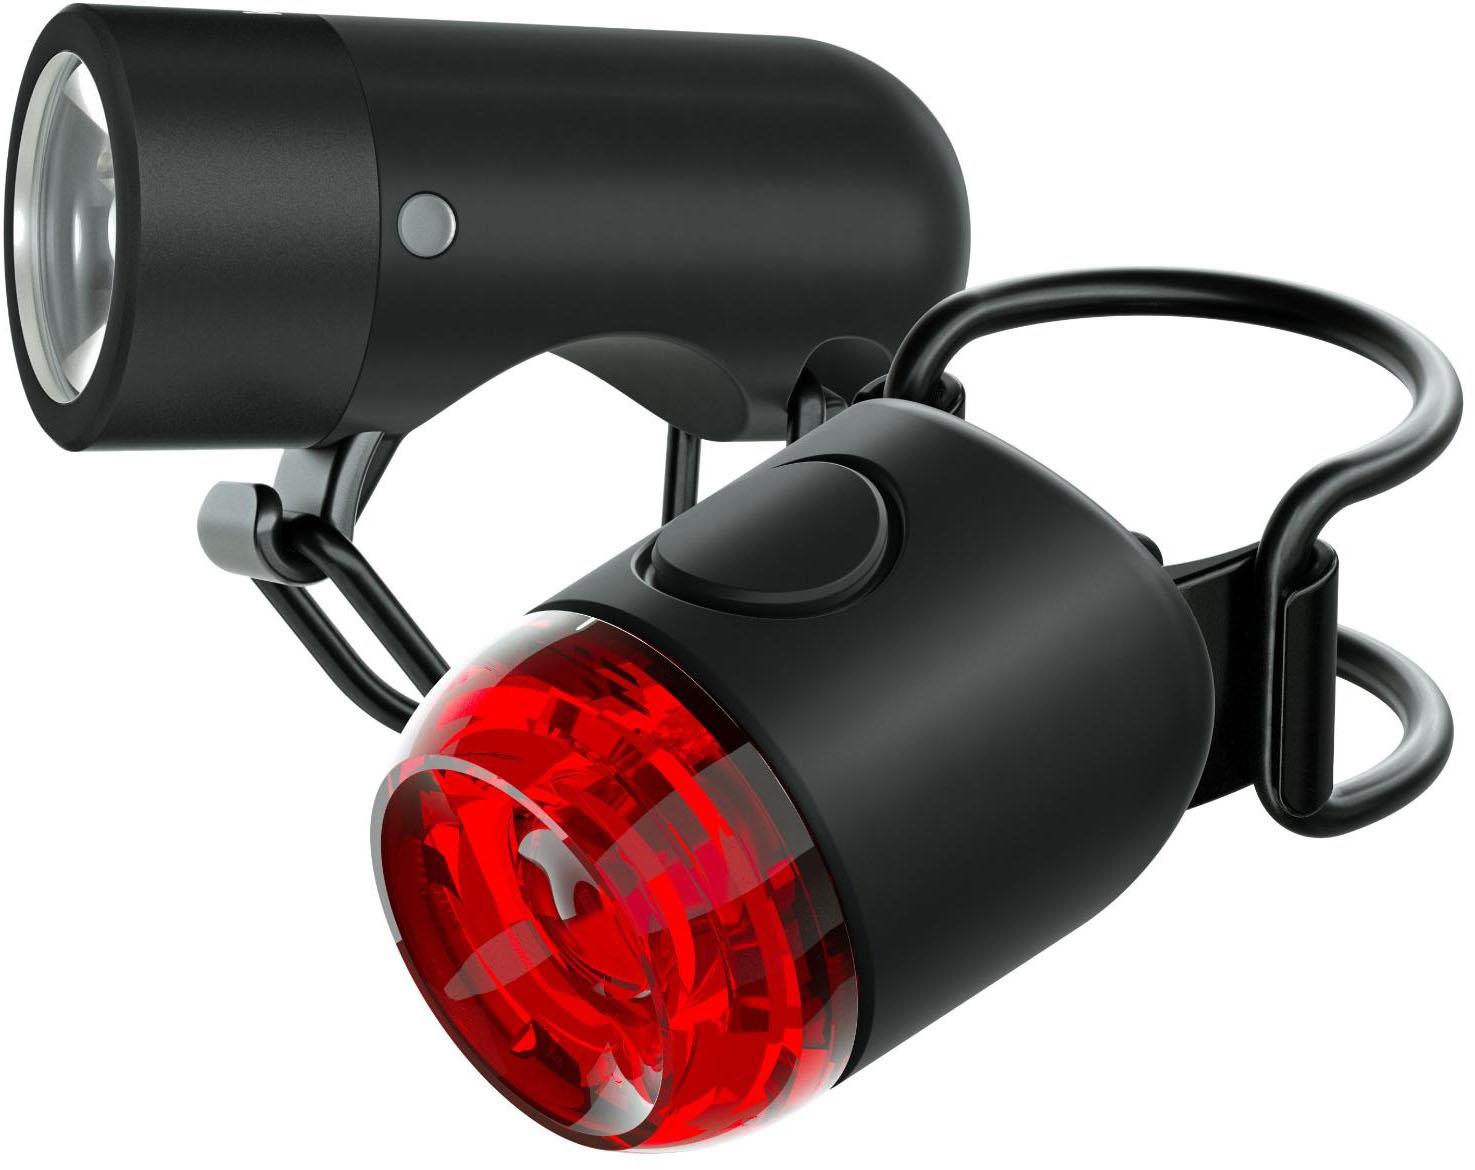 Knog Plug FrontandRear Light Set - Black